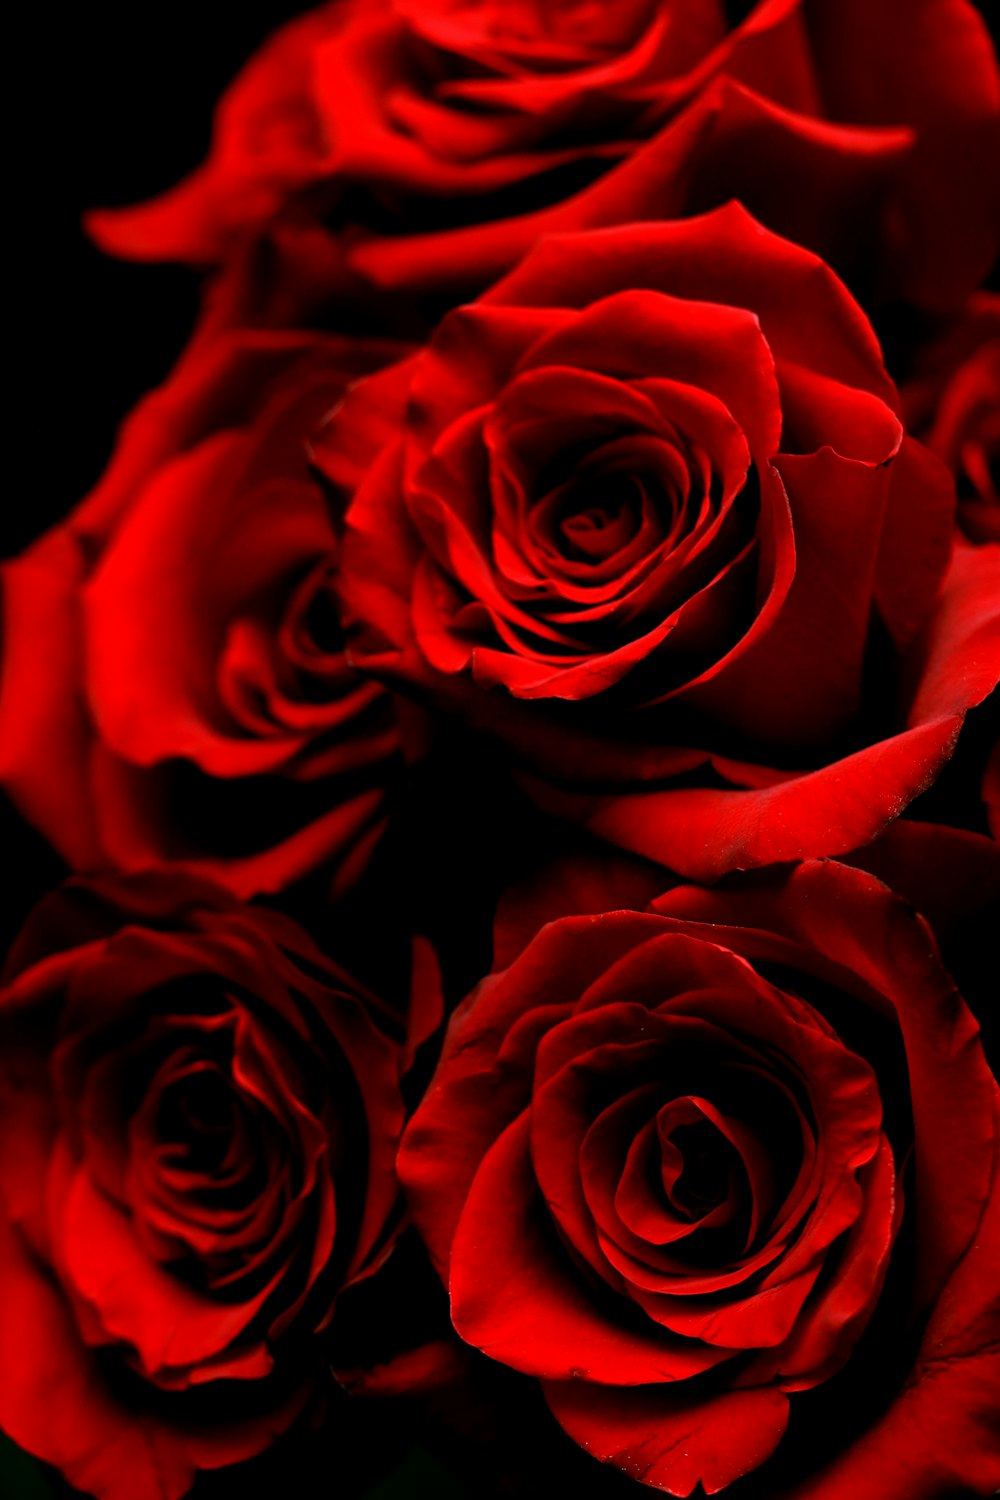 Más de 550 imágenes de rosas rojas | Descargar imágenes gratis en Unsplash